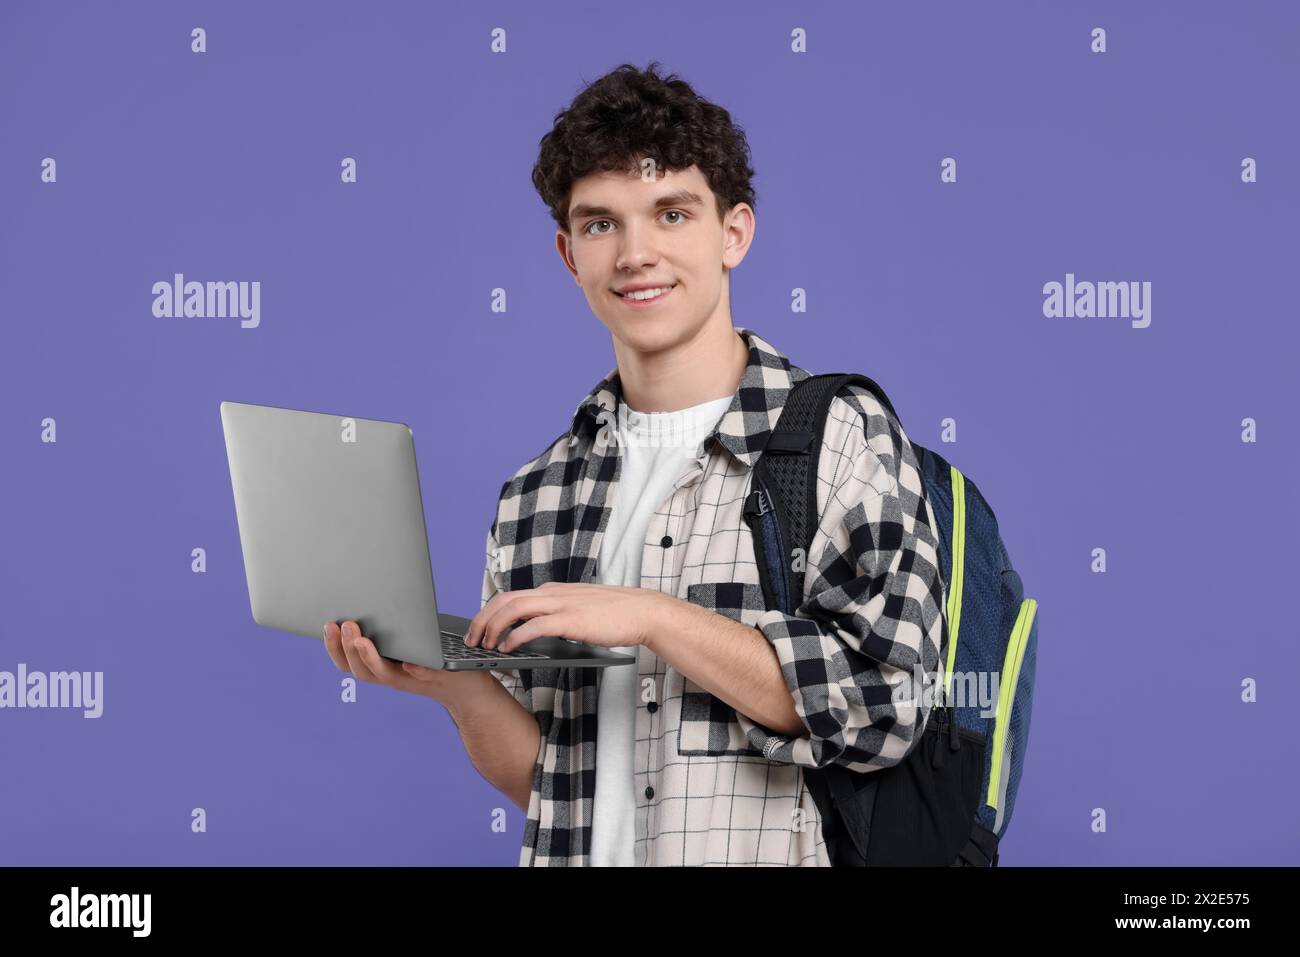 Porträt eines Schülers mit Rucksack und Laptop auf violettem Hintergrund Stockfoto